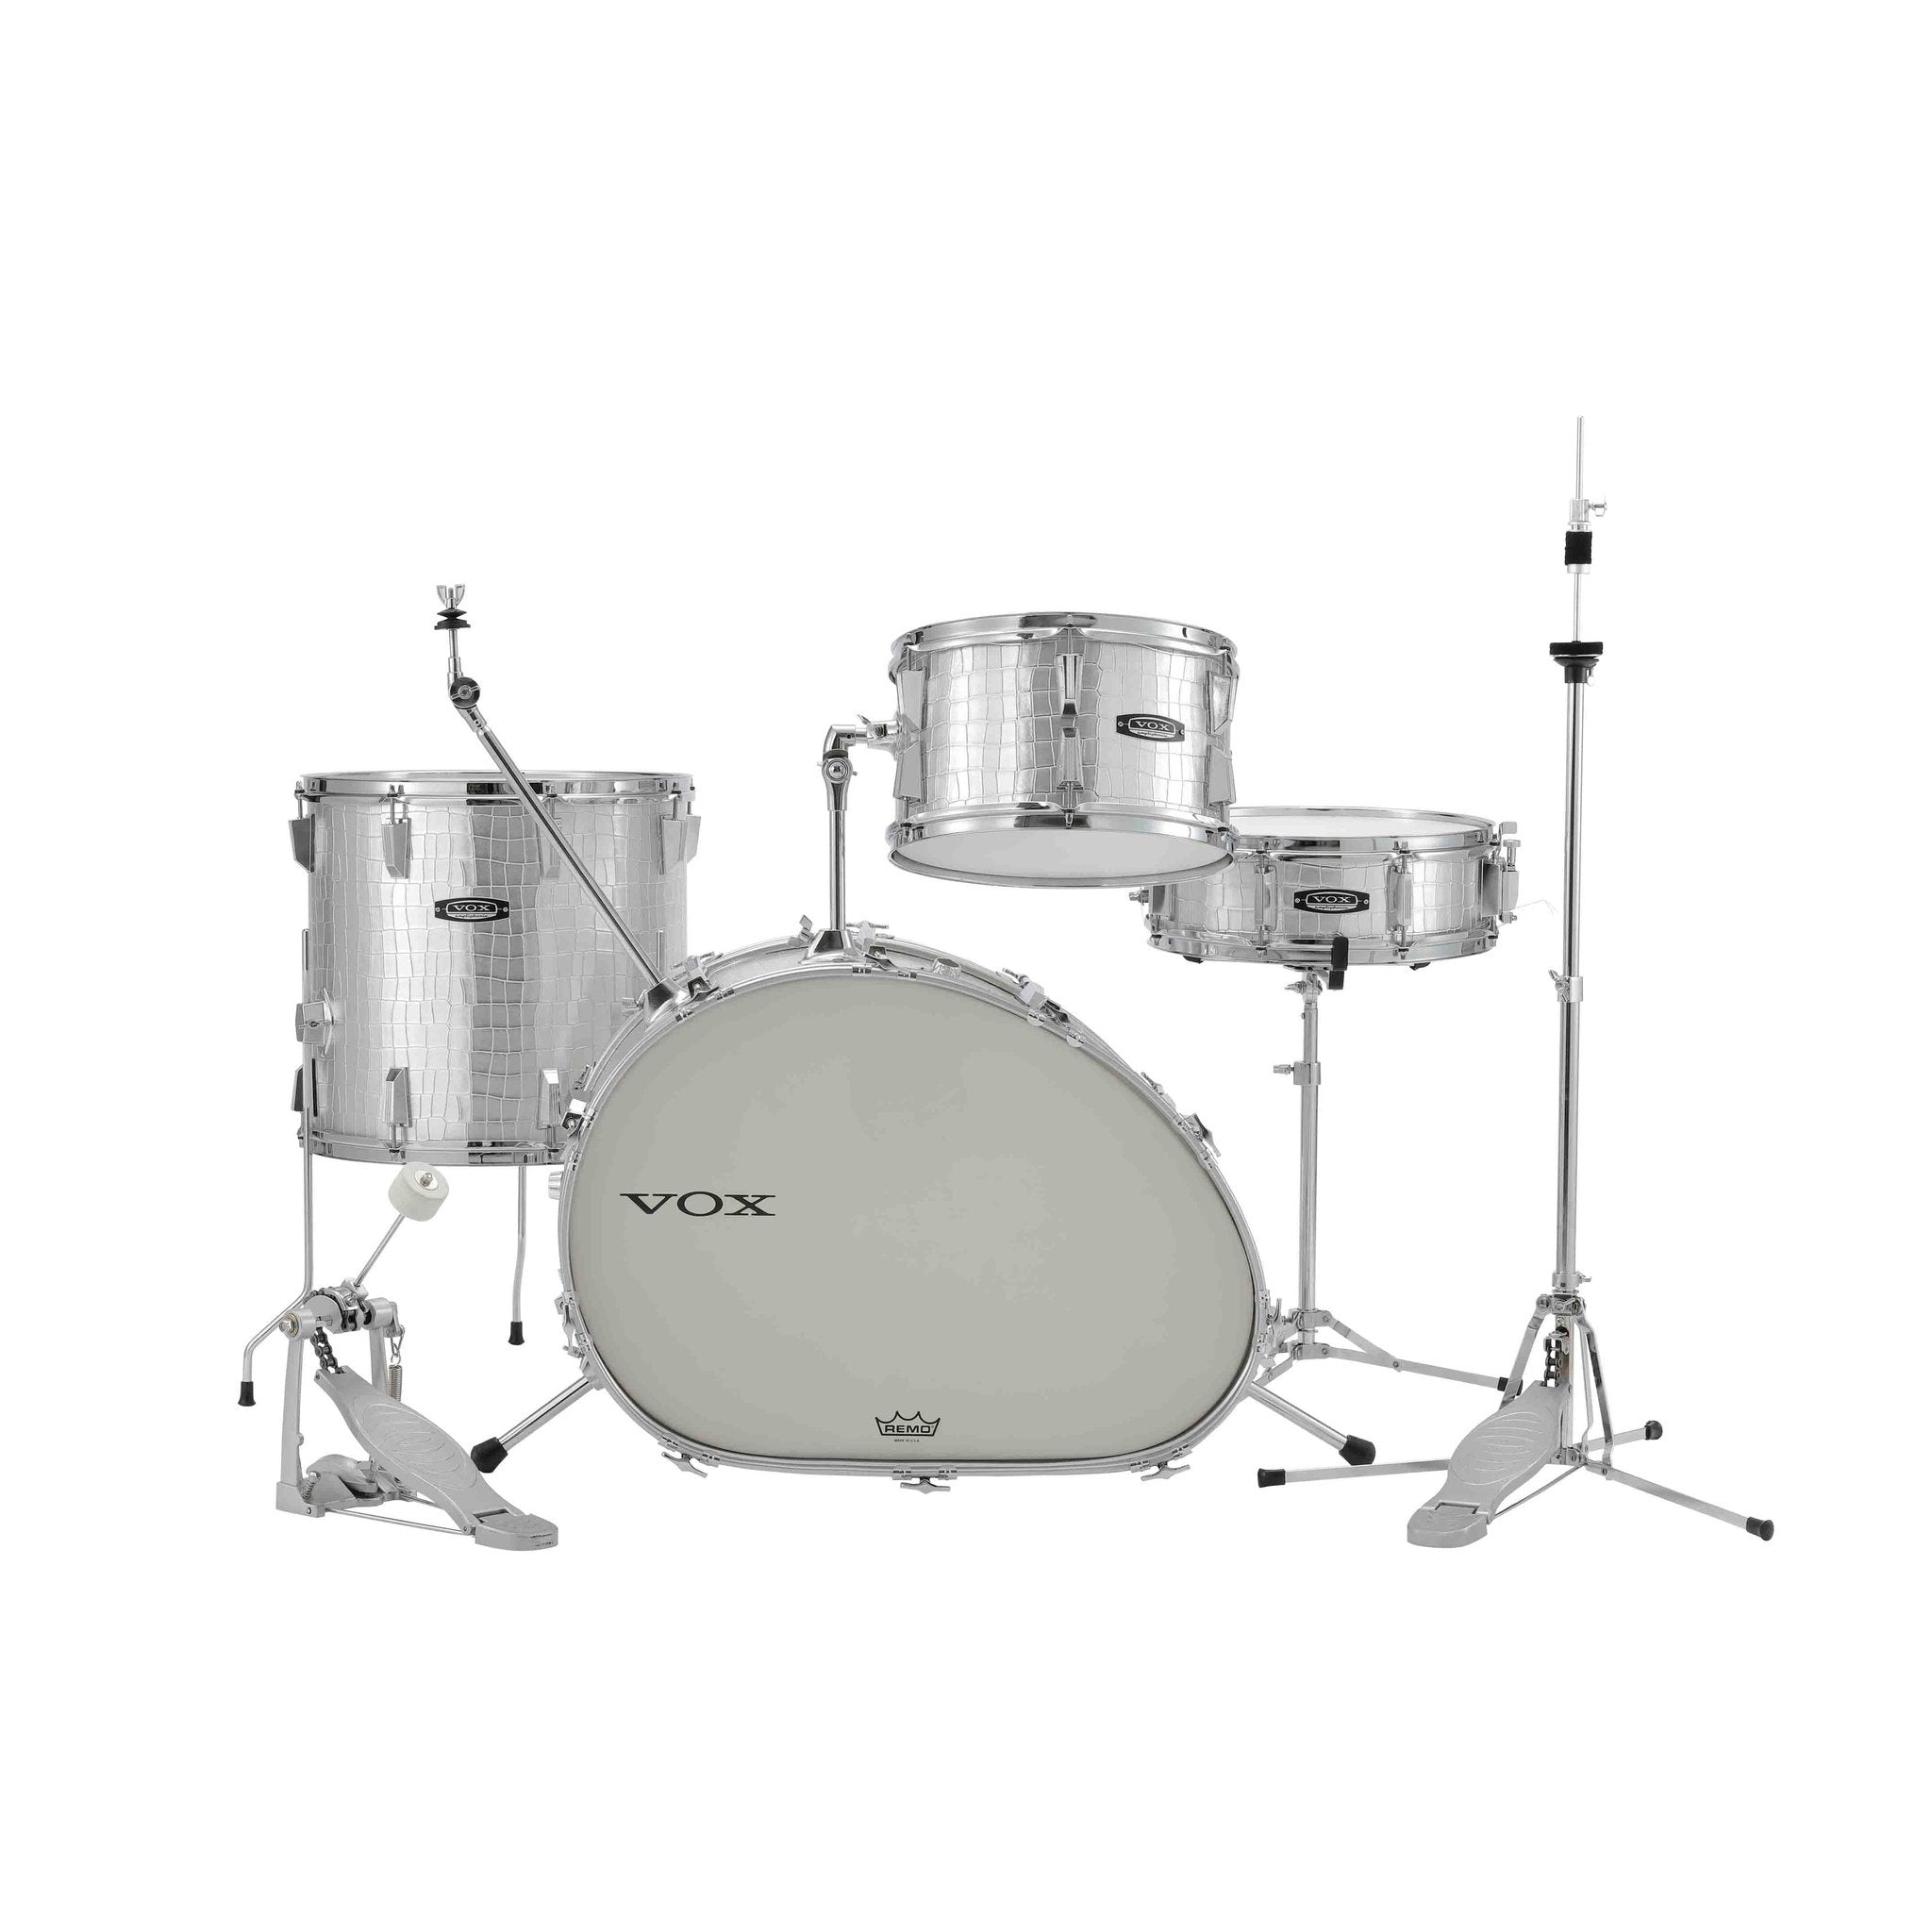 Vox Telstar Drum Kit 5